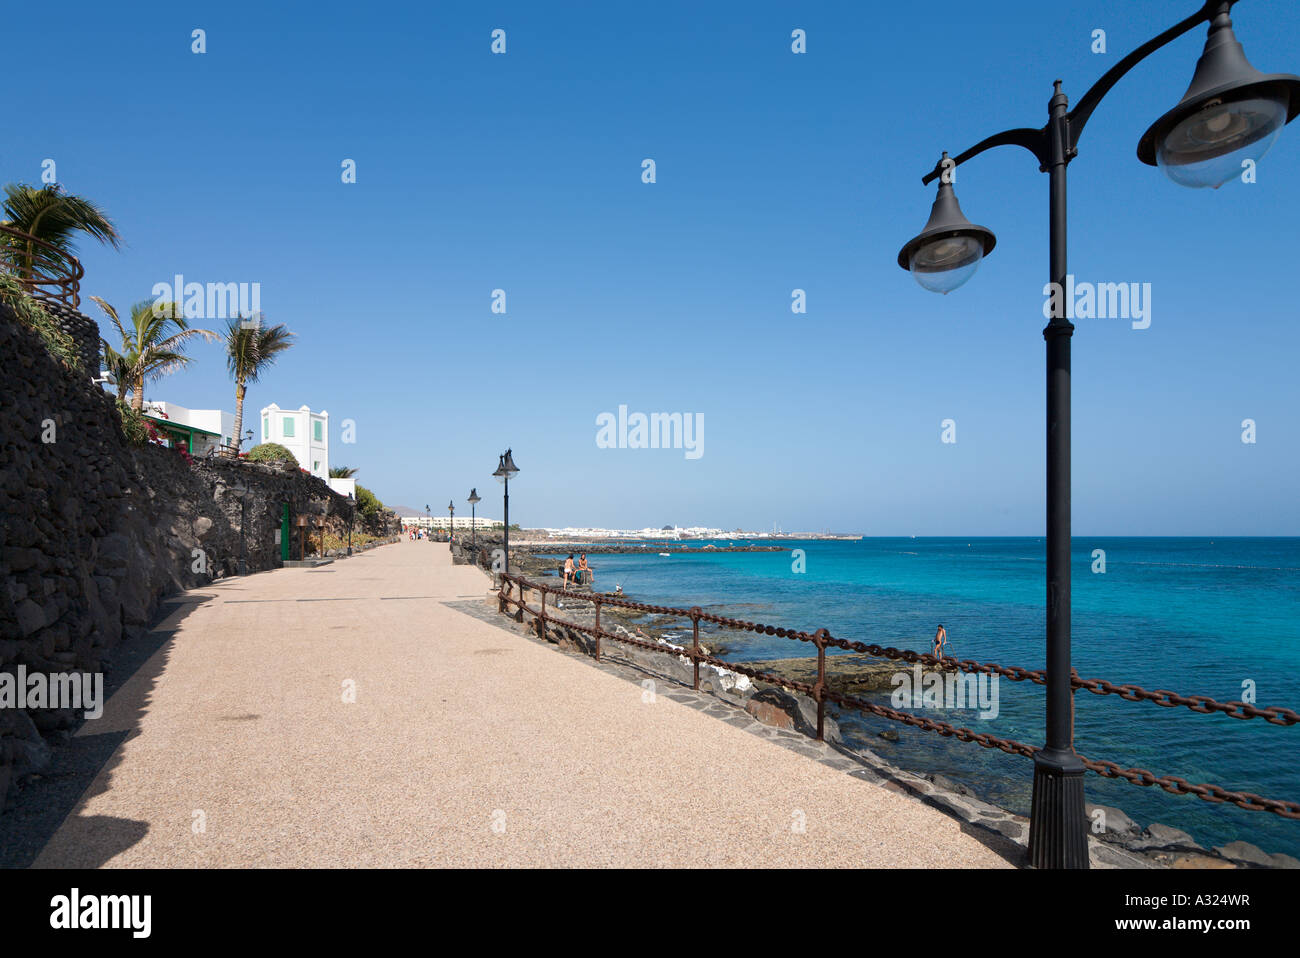 La promenade et des boutiques dans le centre de la station balnéaire, Playa Blanca, Lanzarote, îles Canaries, Espagne Banque D'Images